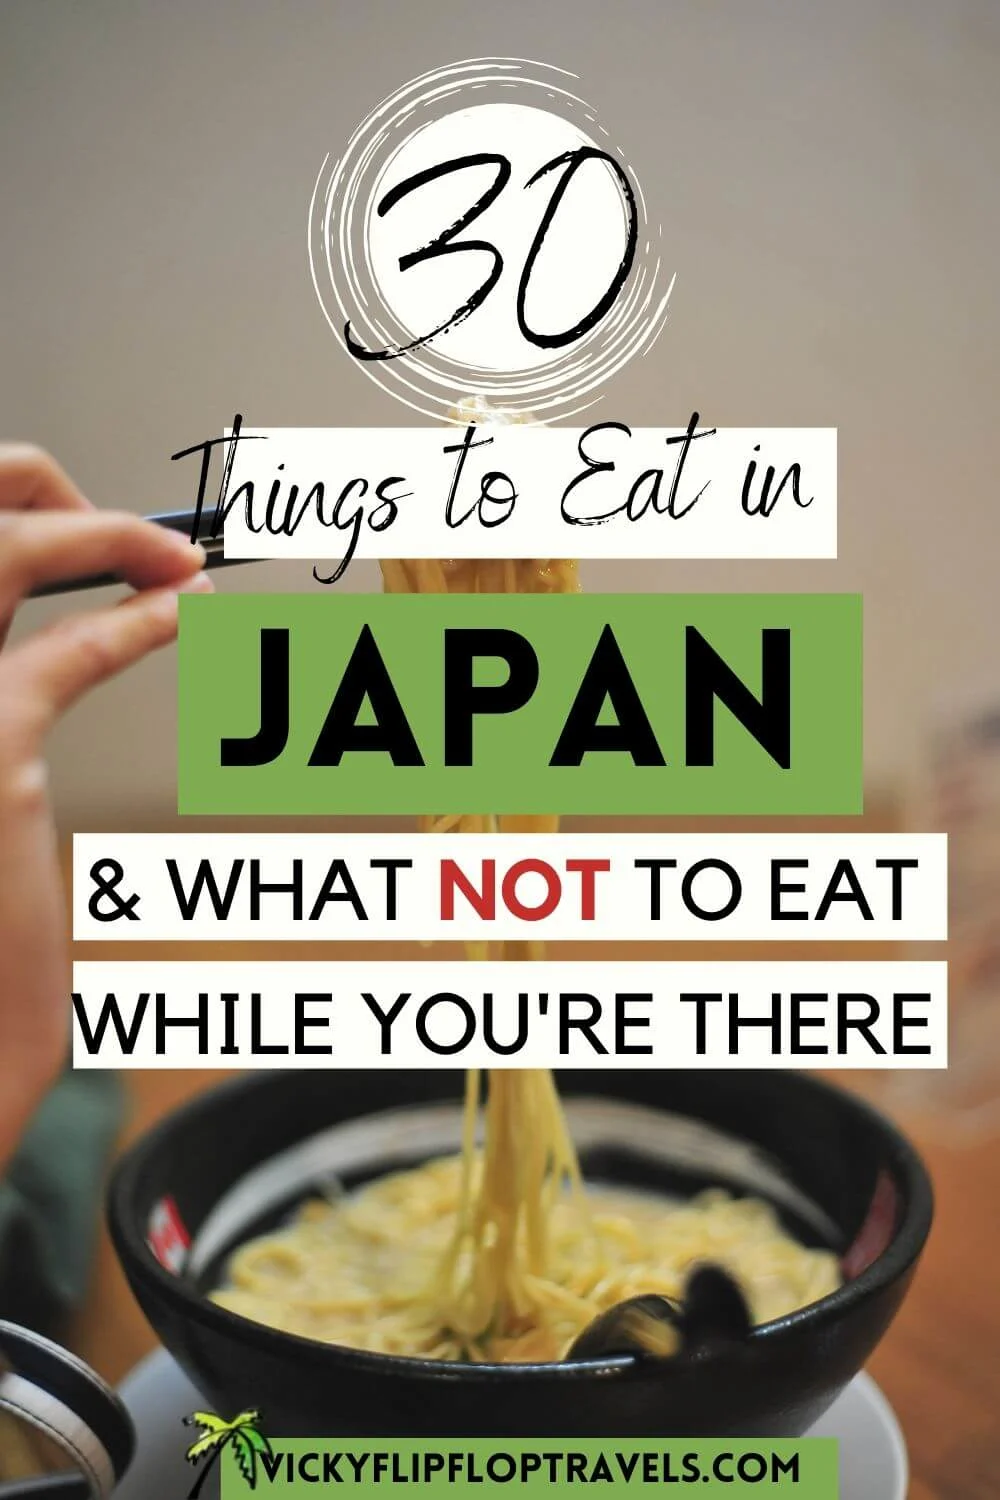 TASTY FOOD IN JAPAN